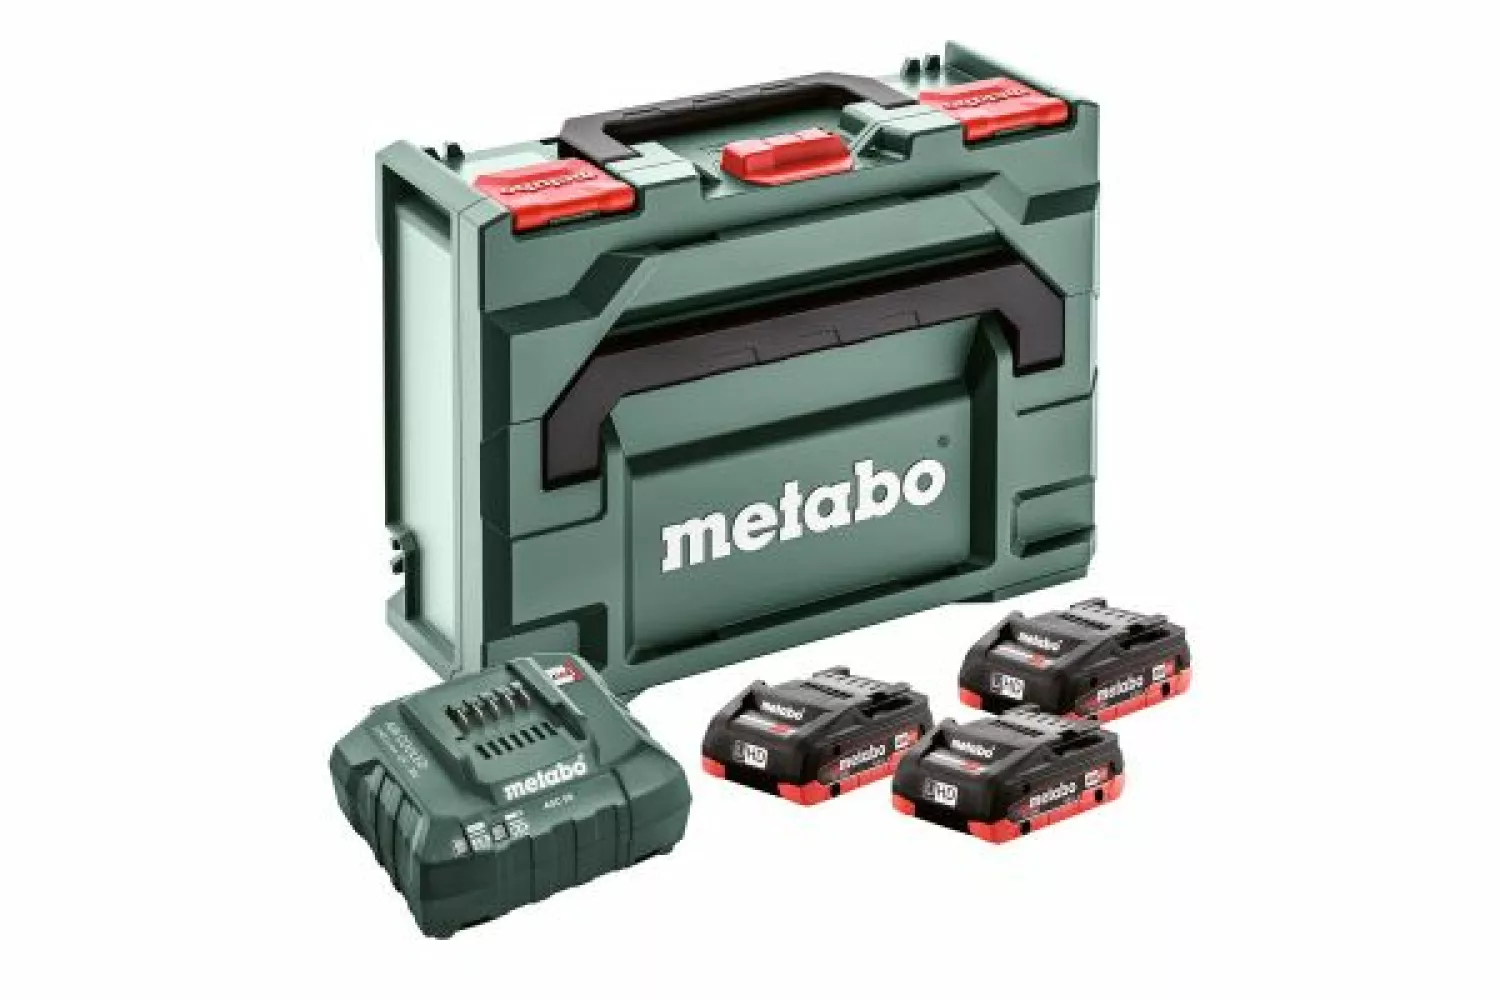 Metabo 685133000 18V LiHD accu starterset (3x LiHD 4.0Ah) + lader in metaBOX-image